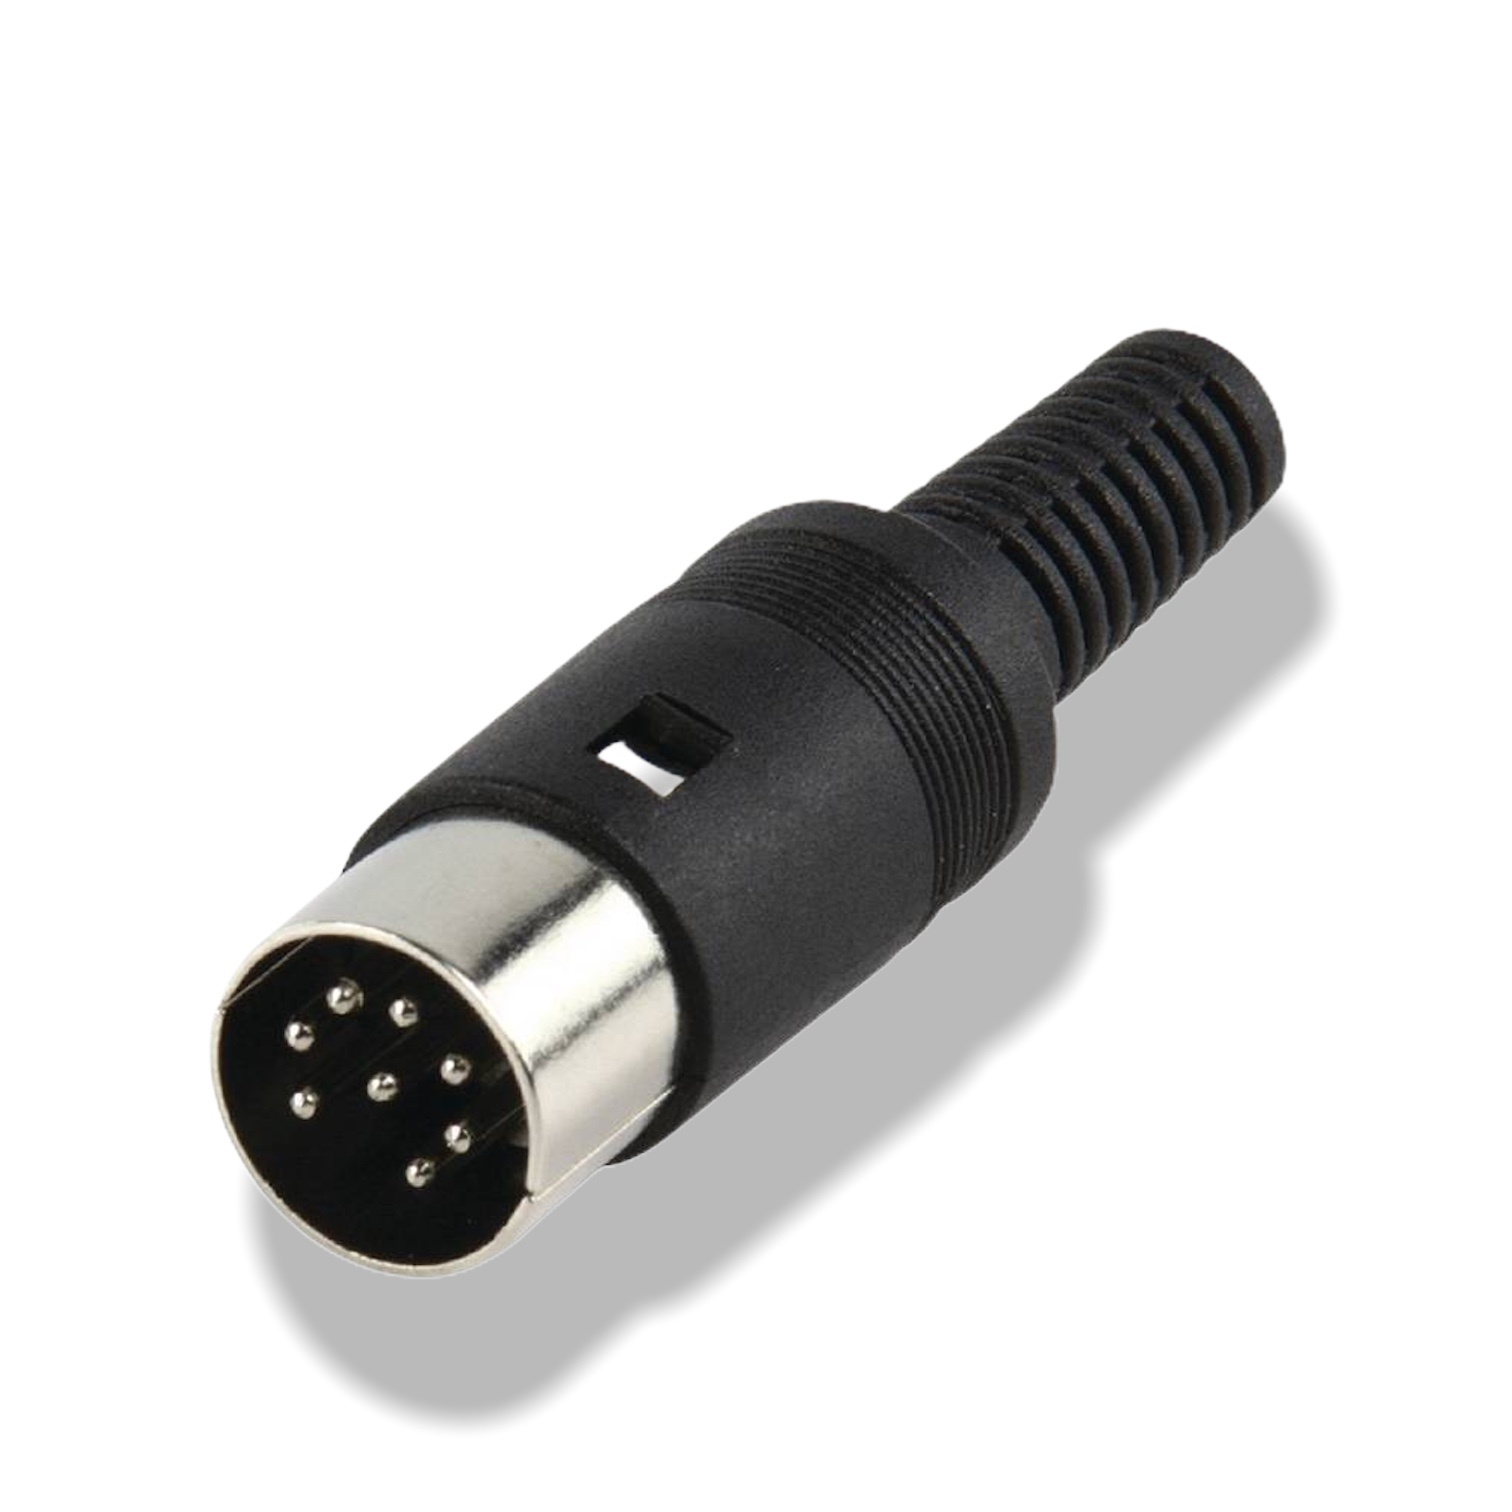 Voorwaarden Uitschakelen Planeet Soldeerbare PowerLink Plug 8-pin DIN Speciaal voor B&O luidsprekers - IDAV-  Integratie Domotica Audio Video